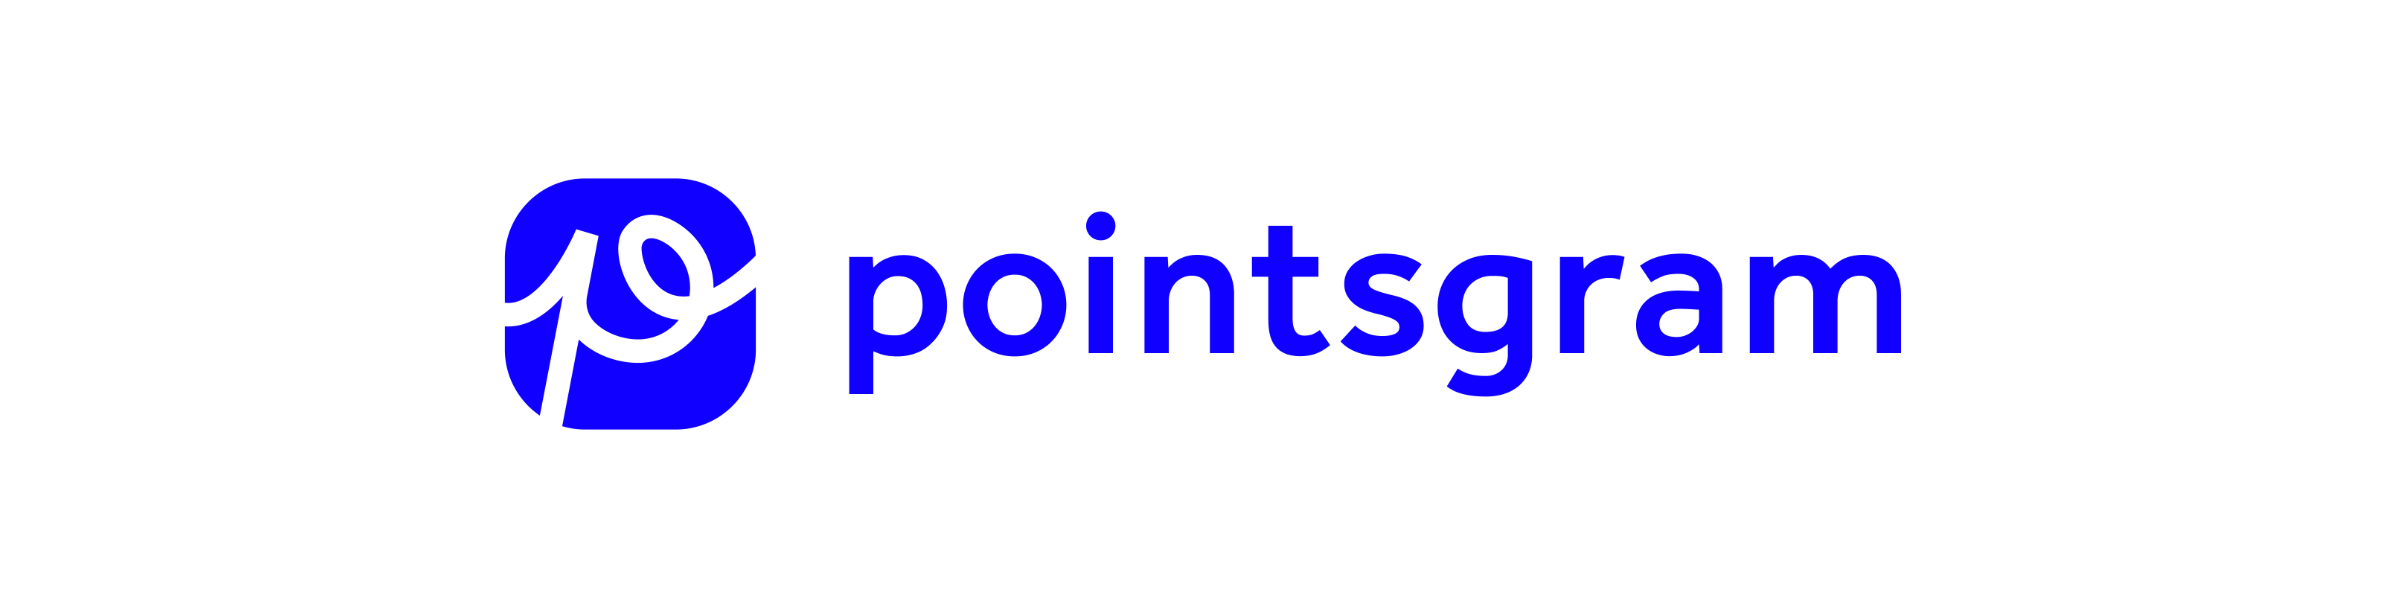 Poinstgram Logo